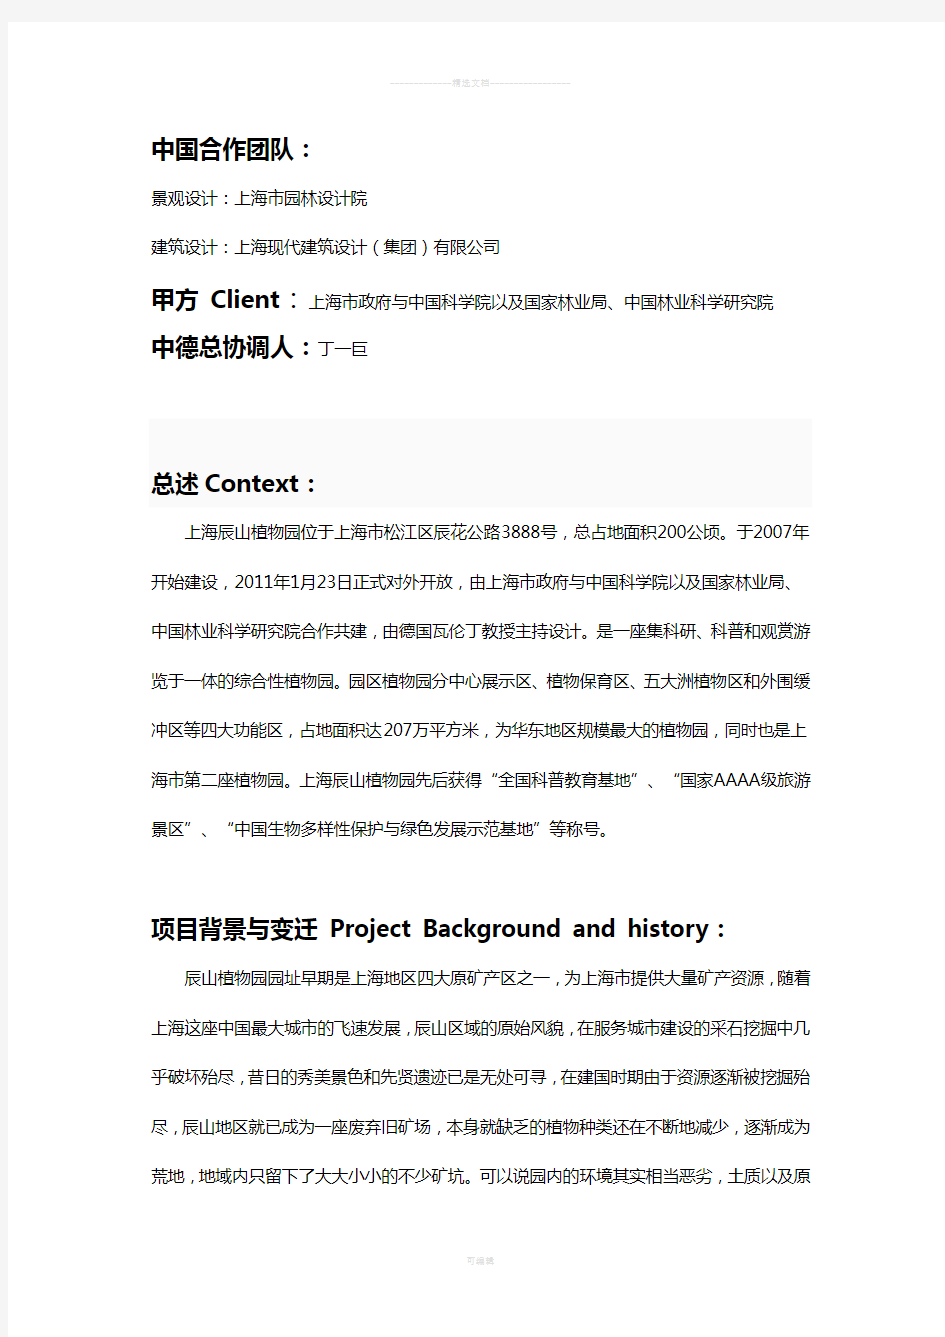 上海辰山植物园案例分析